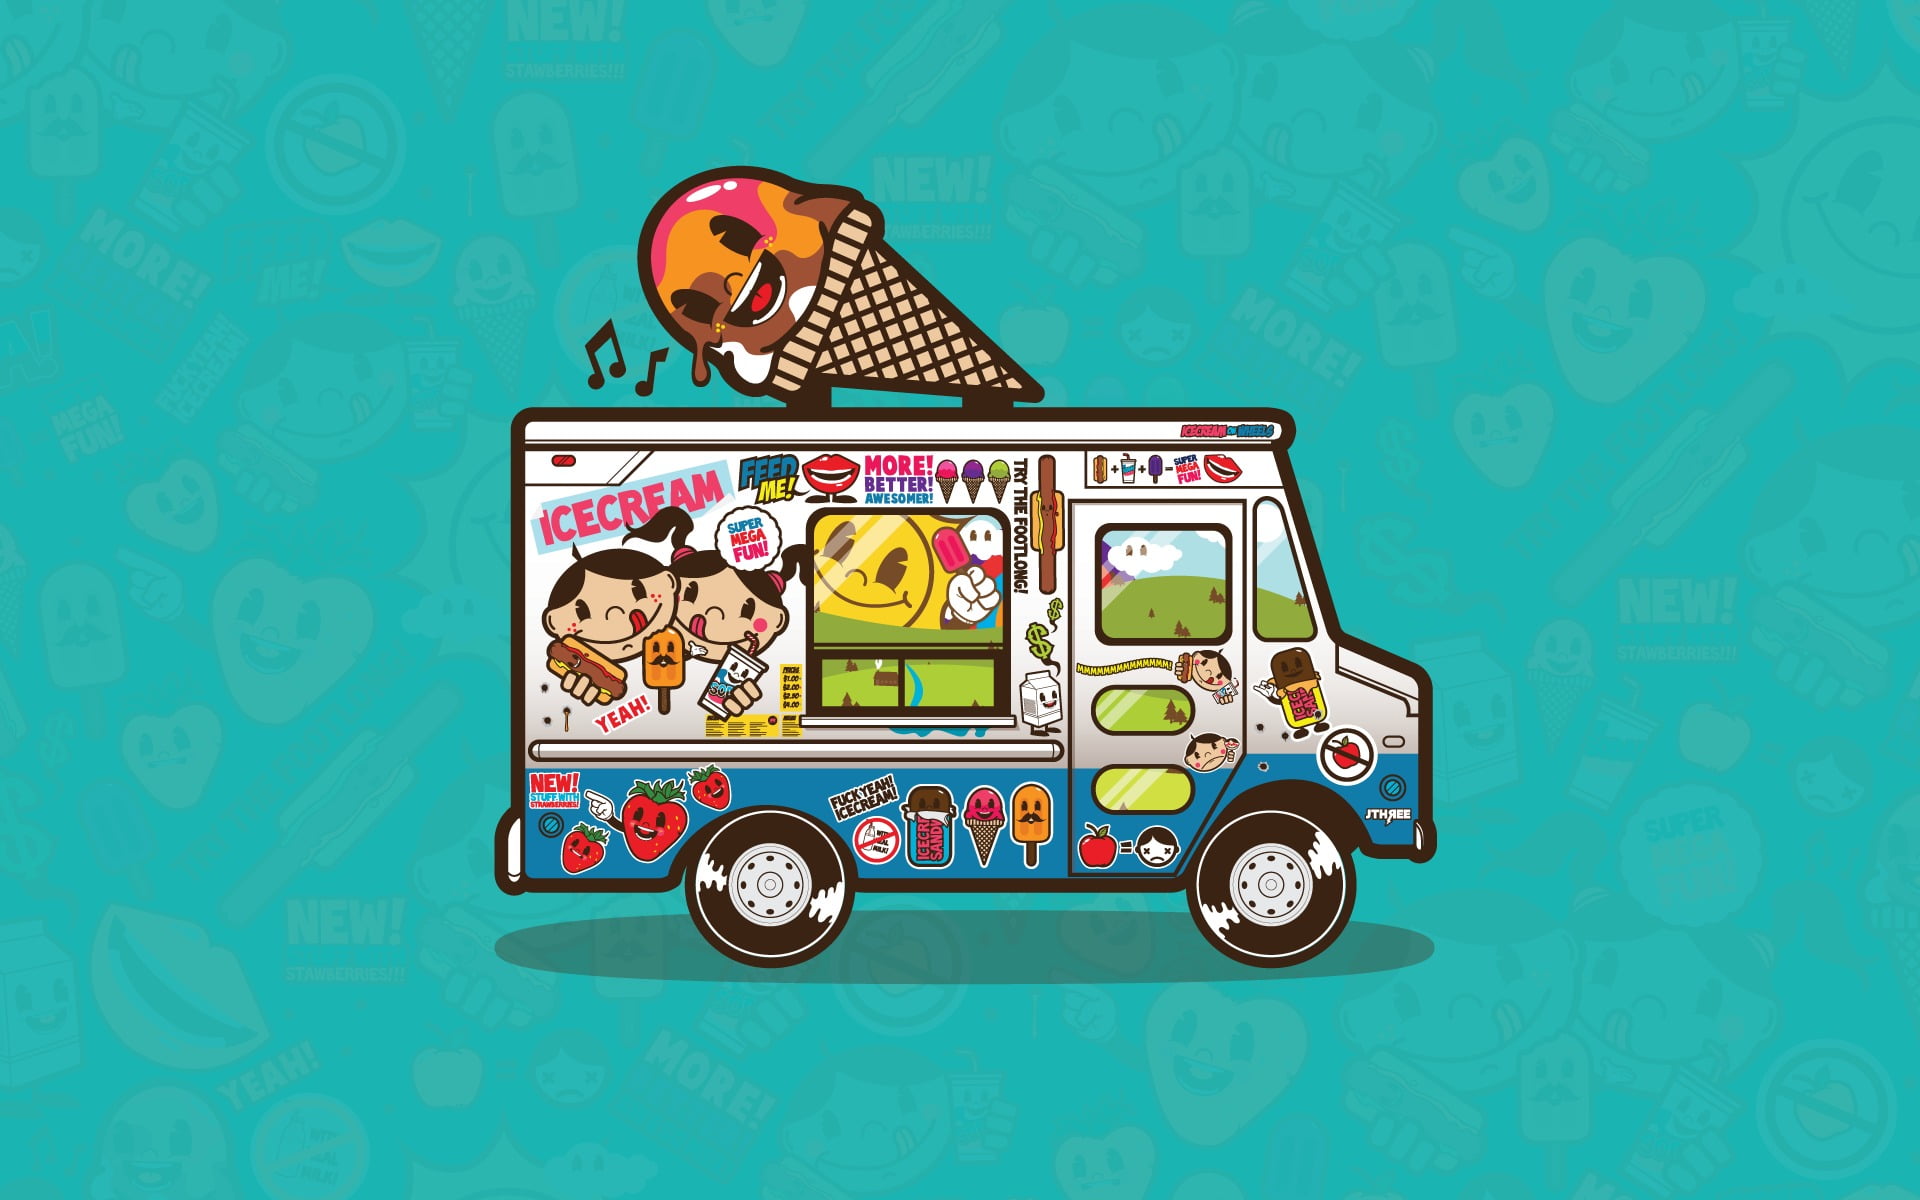 multicolored ice cream truck illustration, trucks, artwork, Jared Nickerson